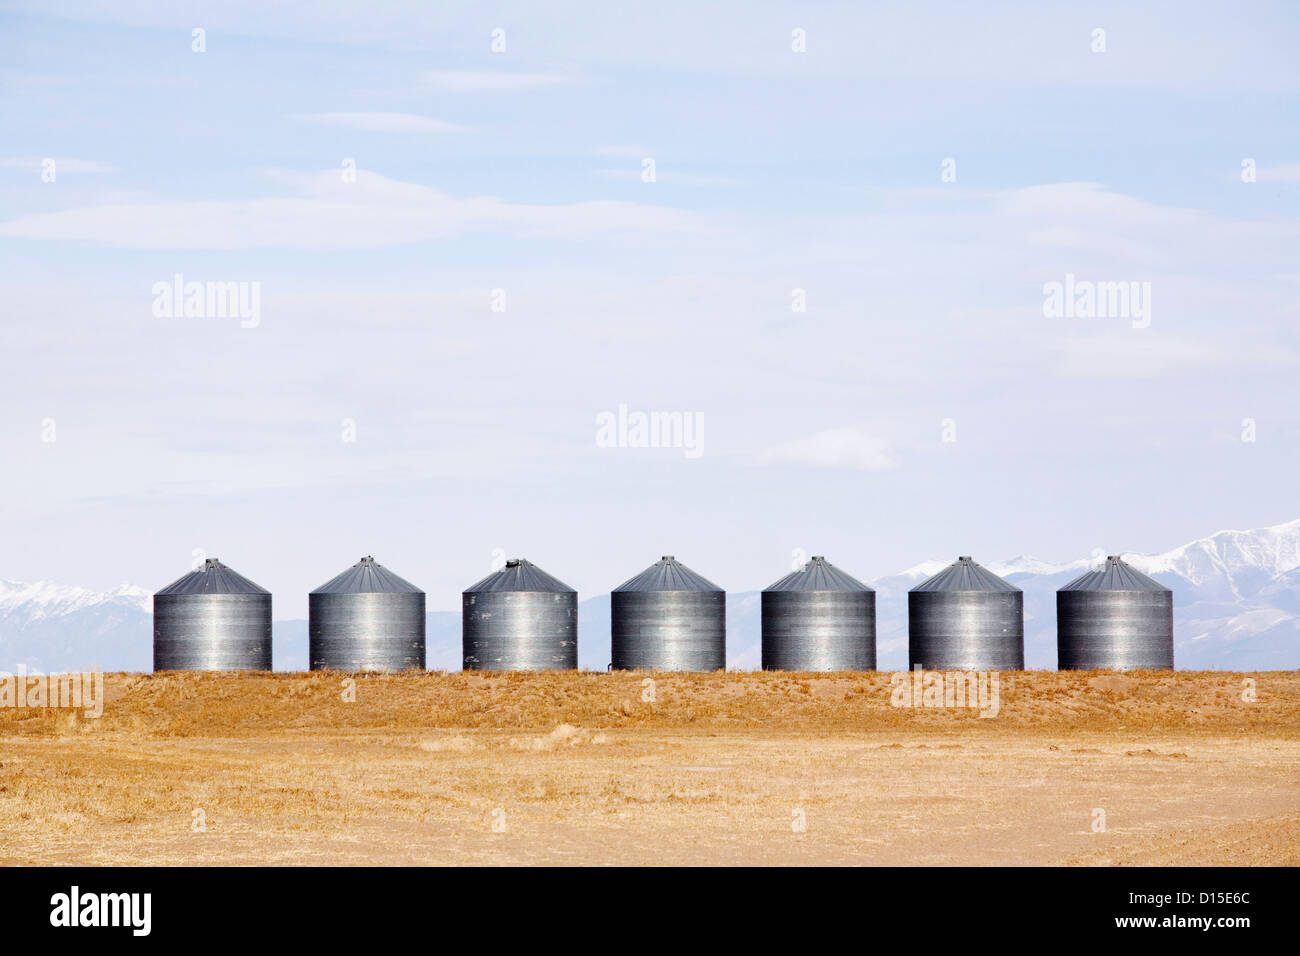 USA, Colorado, Grain bins Stock Photo